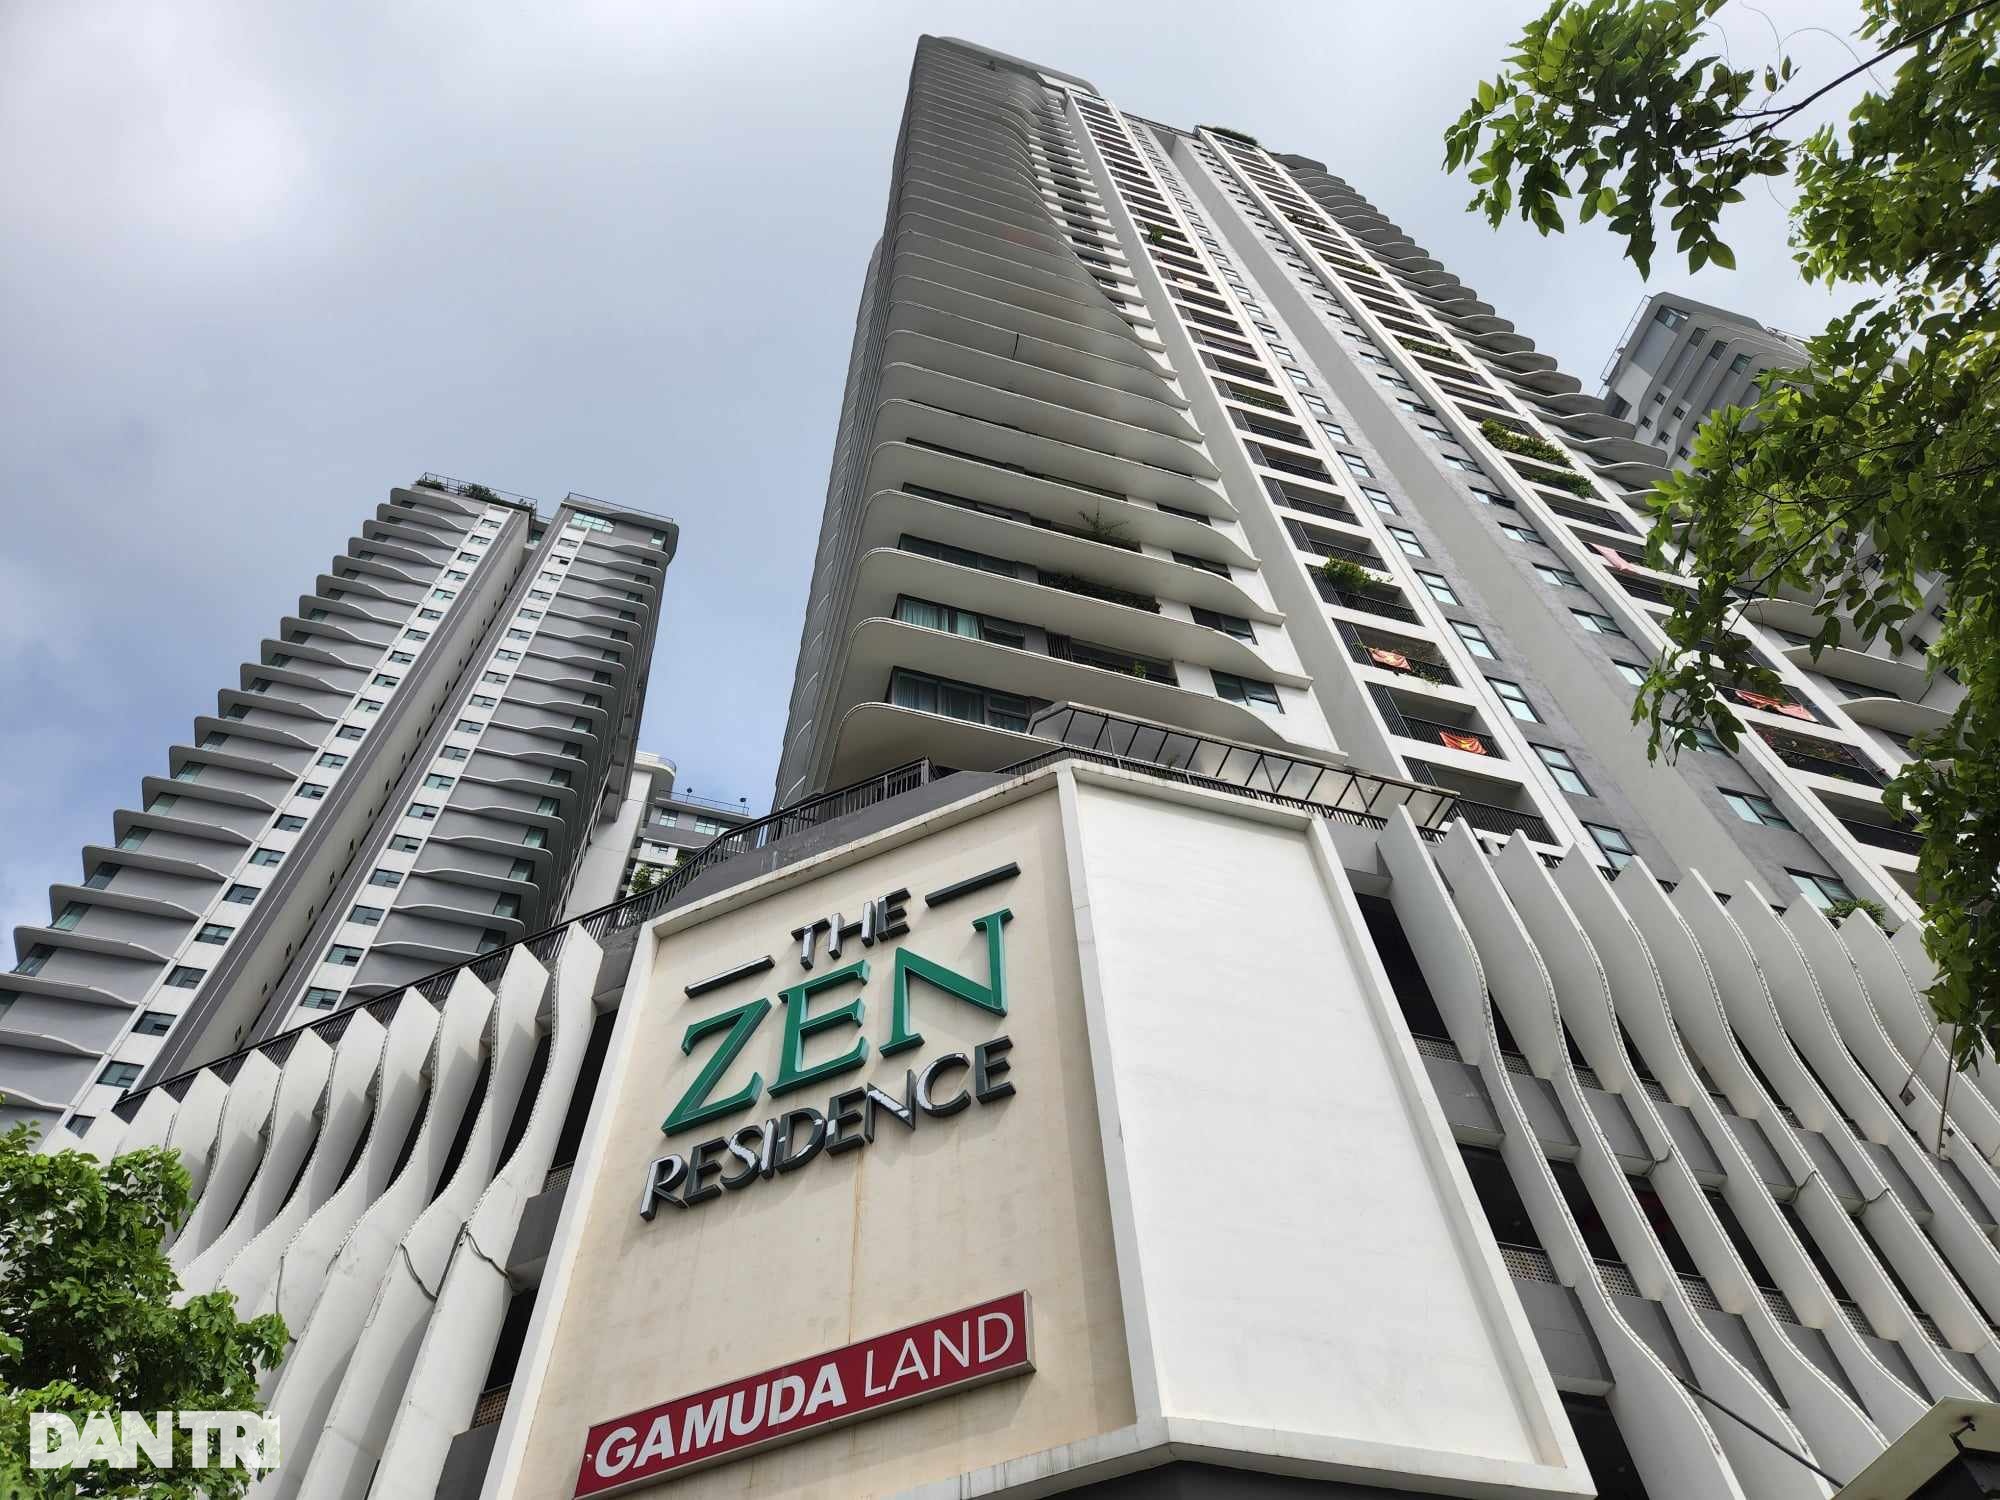 Ban quản trị chung cư The Zen Residence được cư dân bầu và ra mắt Hội nghị nhà chung cư lần đầu vào cuối tháng 10/2021 (Ảnh minh họa: Hà Phong).